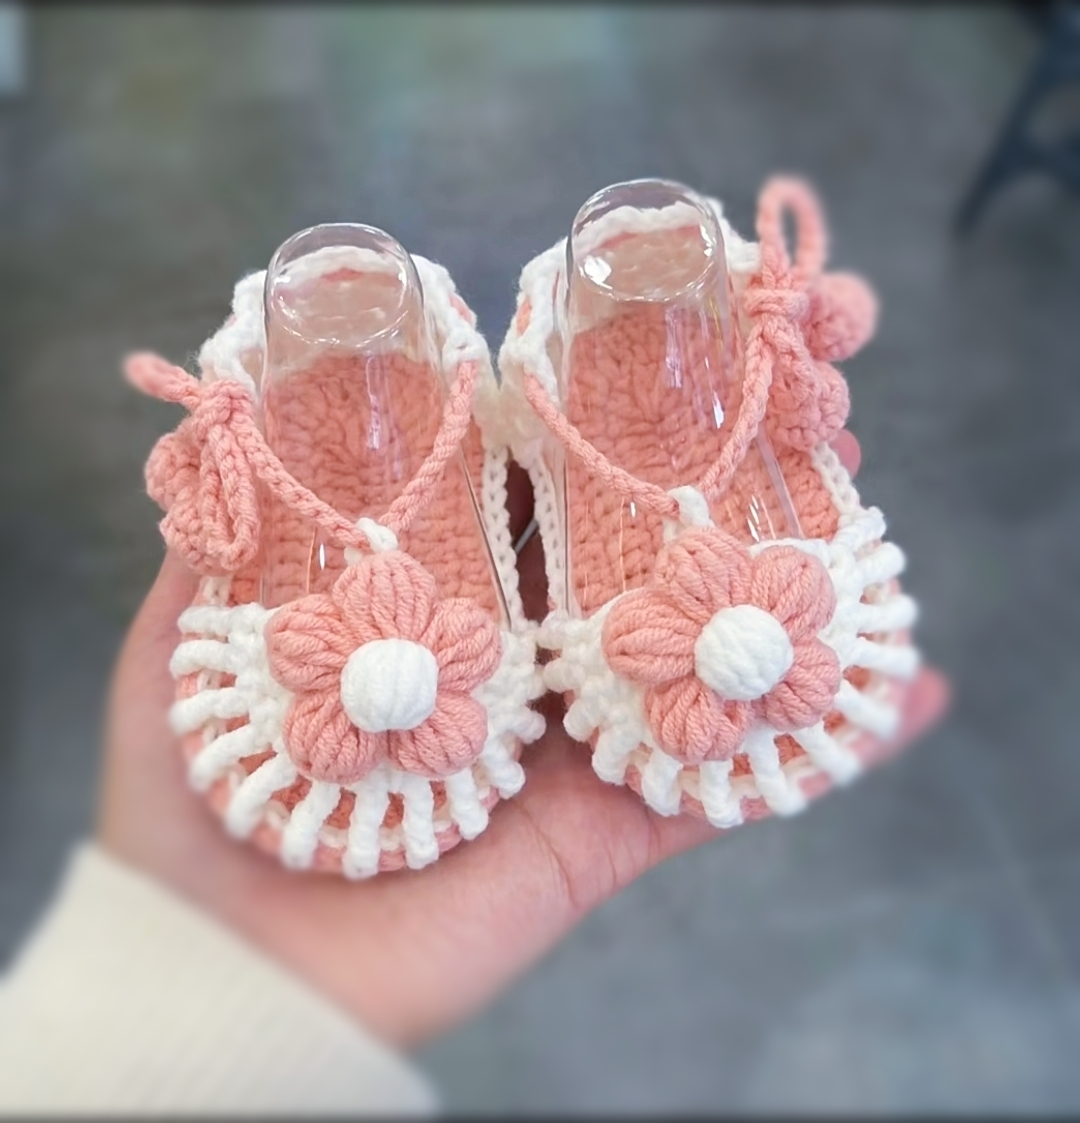 纯手工编织成品宝宝凉鞋镂空透气婴儿软底鞋柔软舒适亲肤系带不掉